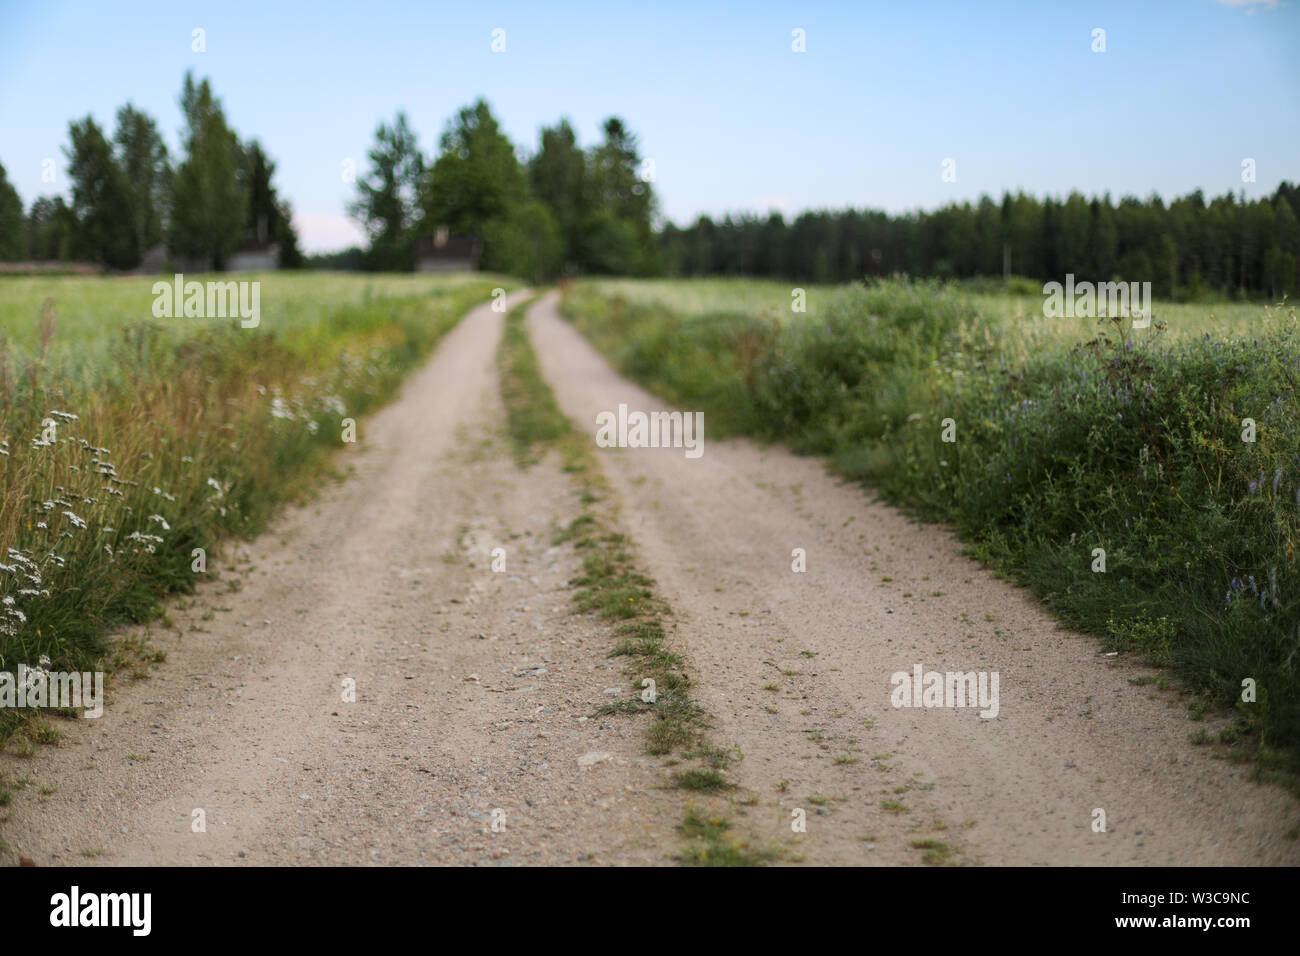 Rural dirt road in Ylöjärvi, Finland Stock Photo